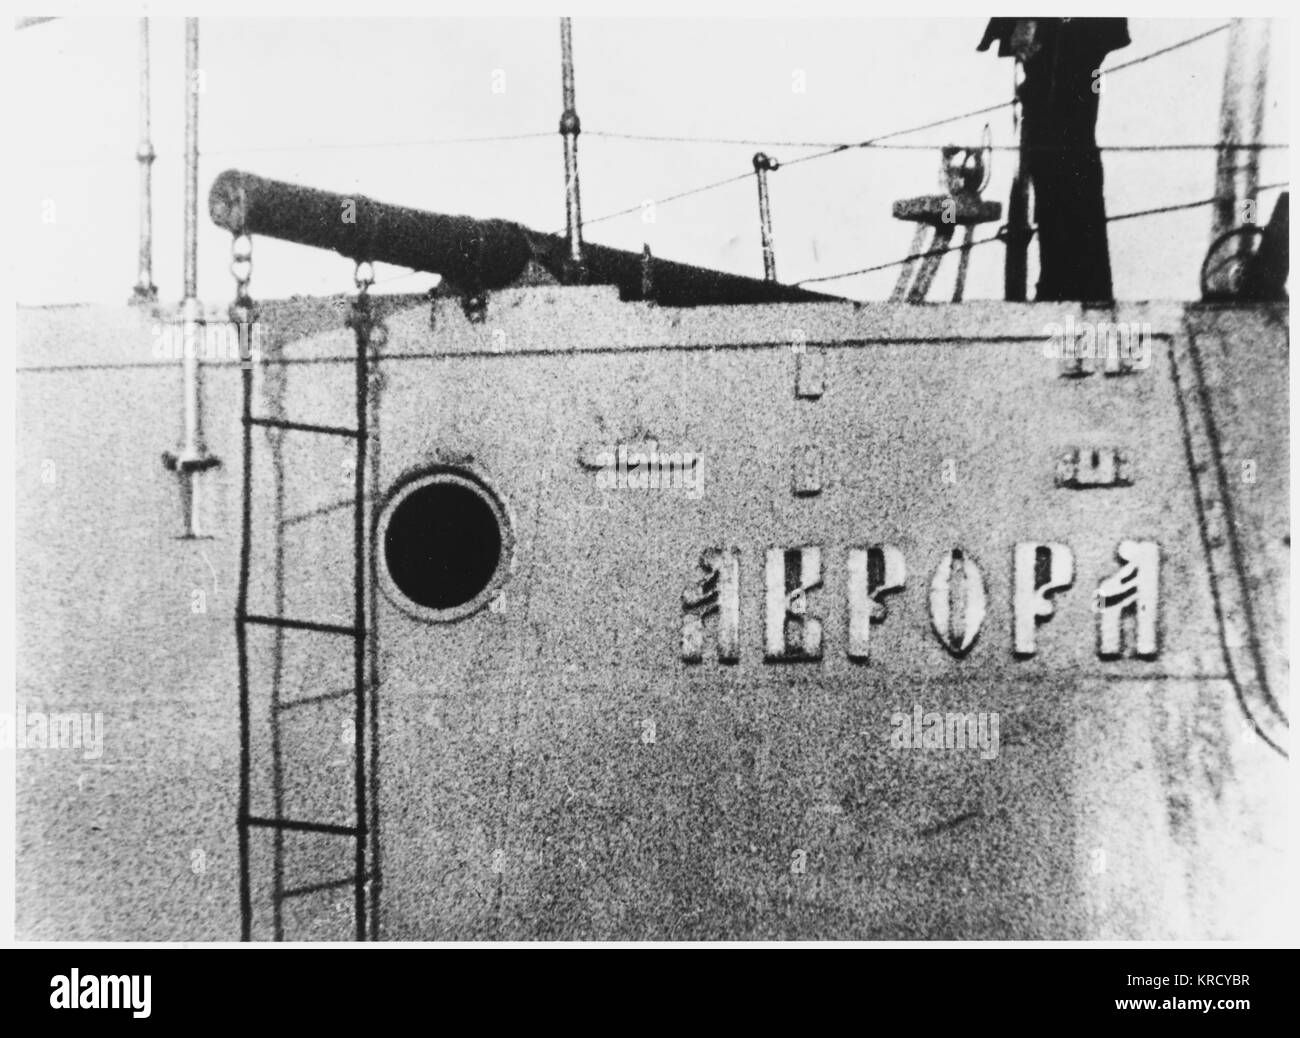 Un coup de feu tiré des canons du croiseur 'Aurora' est le signal de l'assaut du Palais d'hiver, et le renversement du gouvernement provisoire de Kerensky. Date : Octobre 1917 Banque D'Images